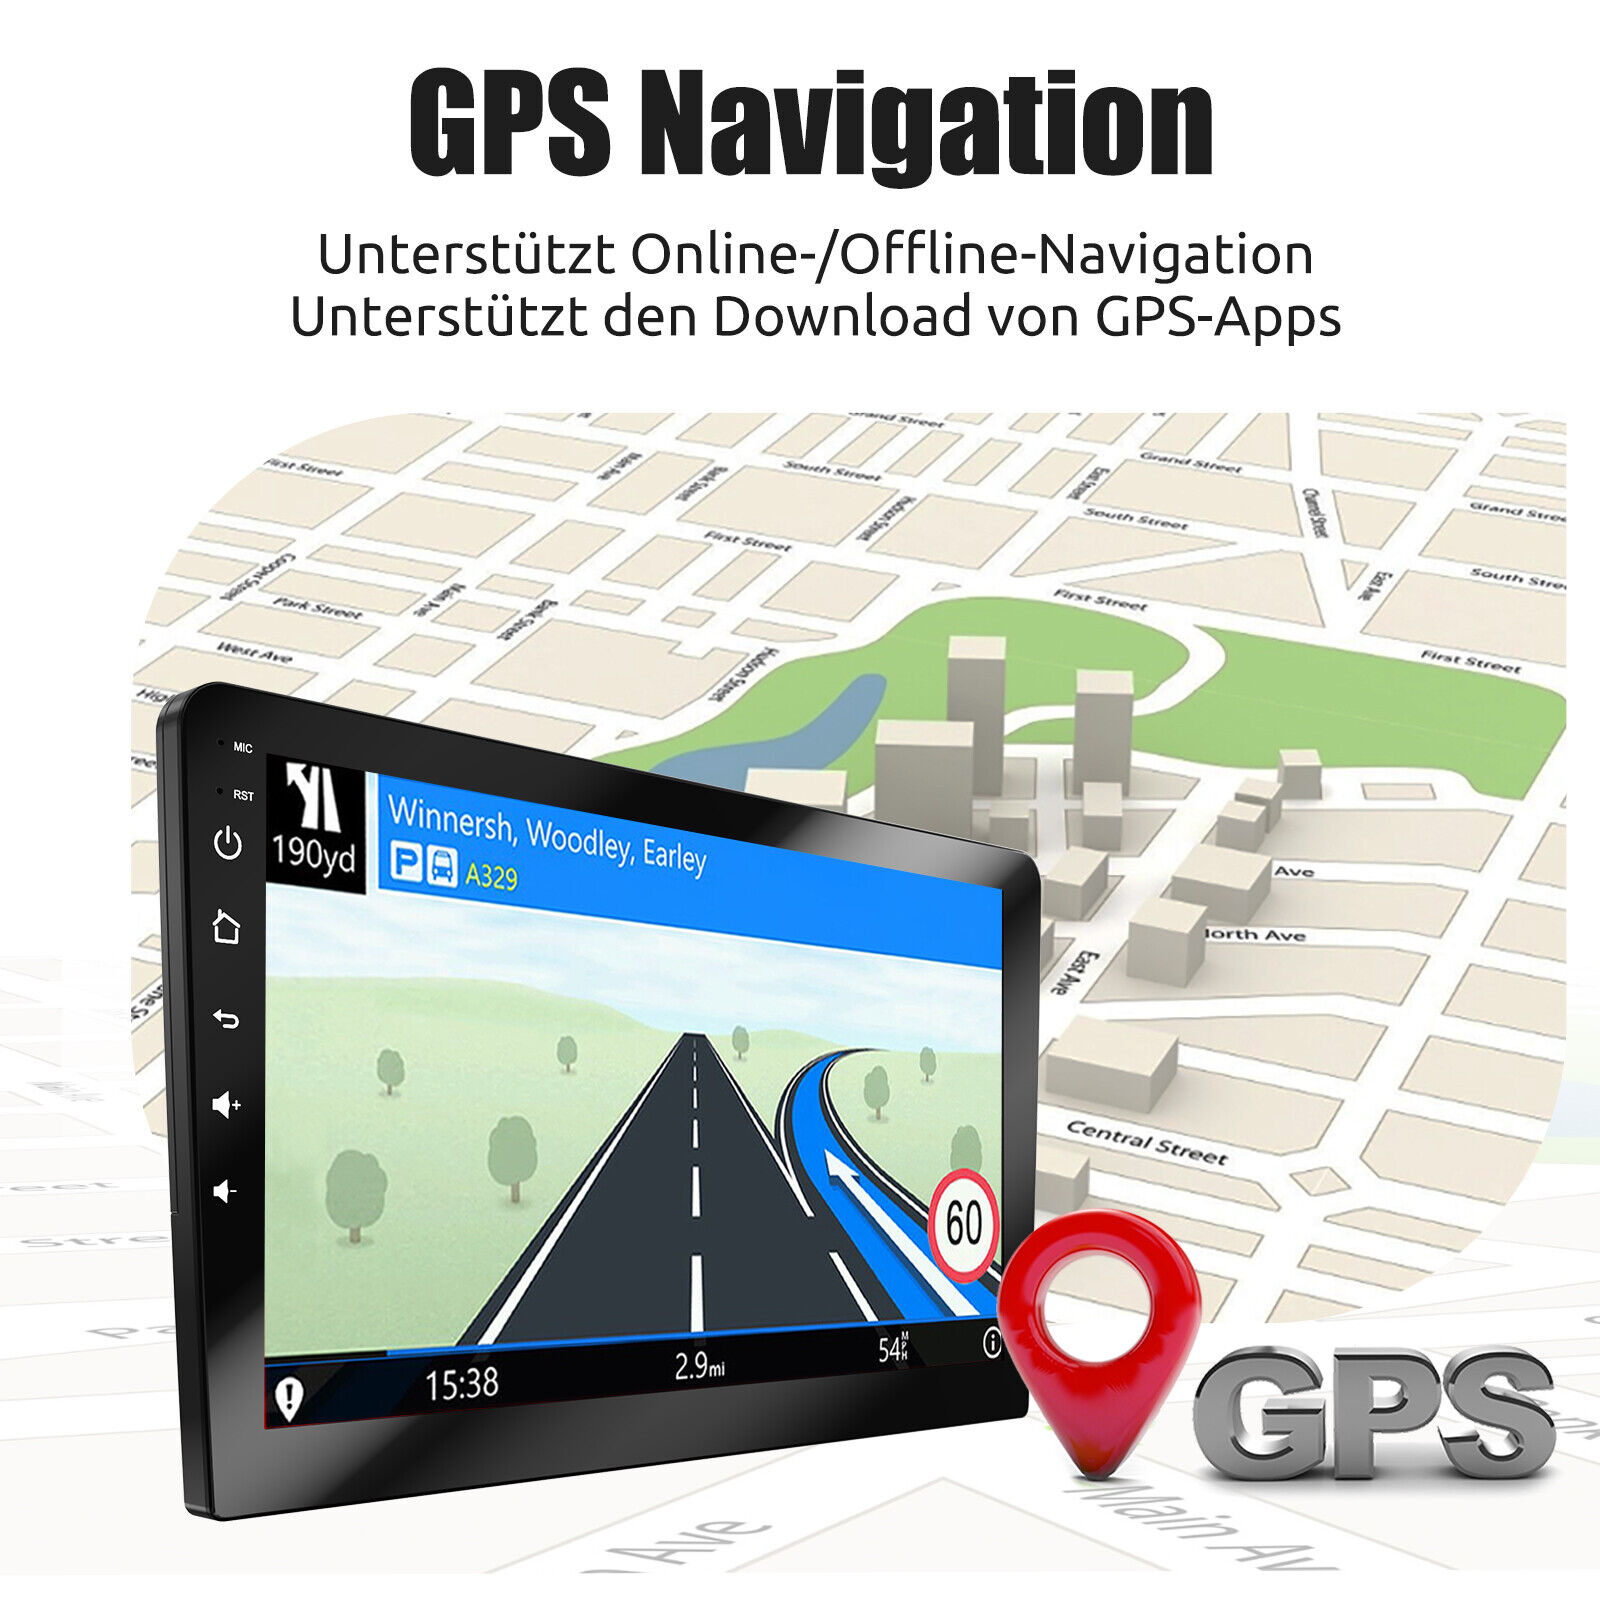 2DIN DAB Android 13 464G Carplay Autoradio GPS Navi RDS Bluetooth WIFI MIK Kam